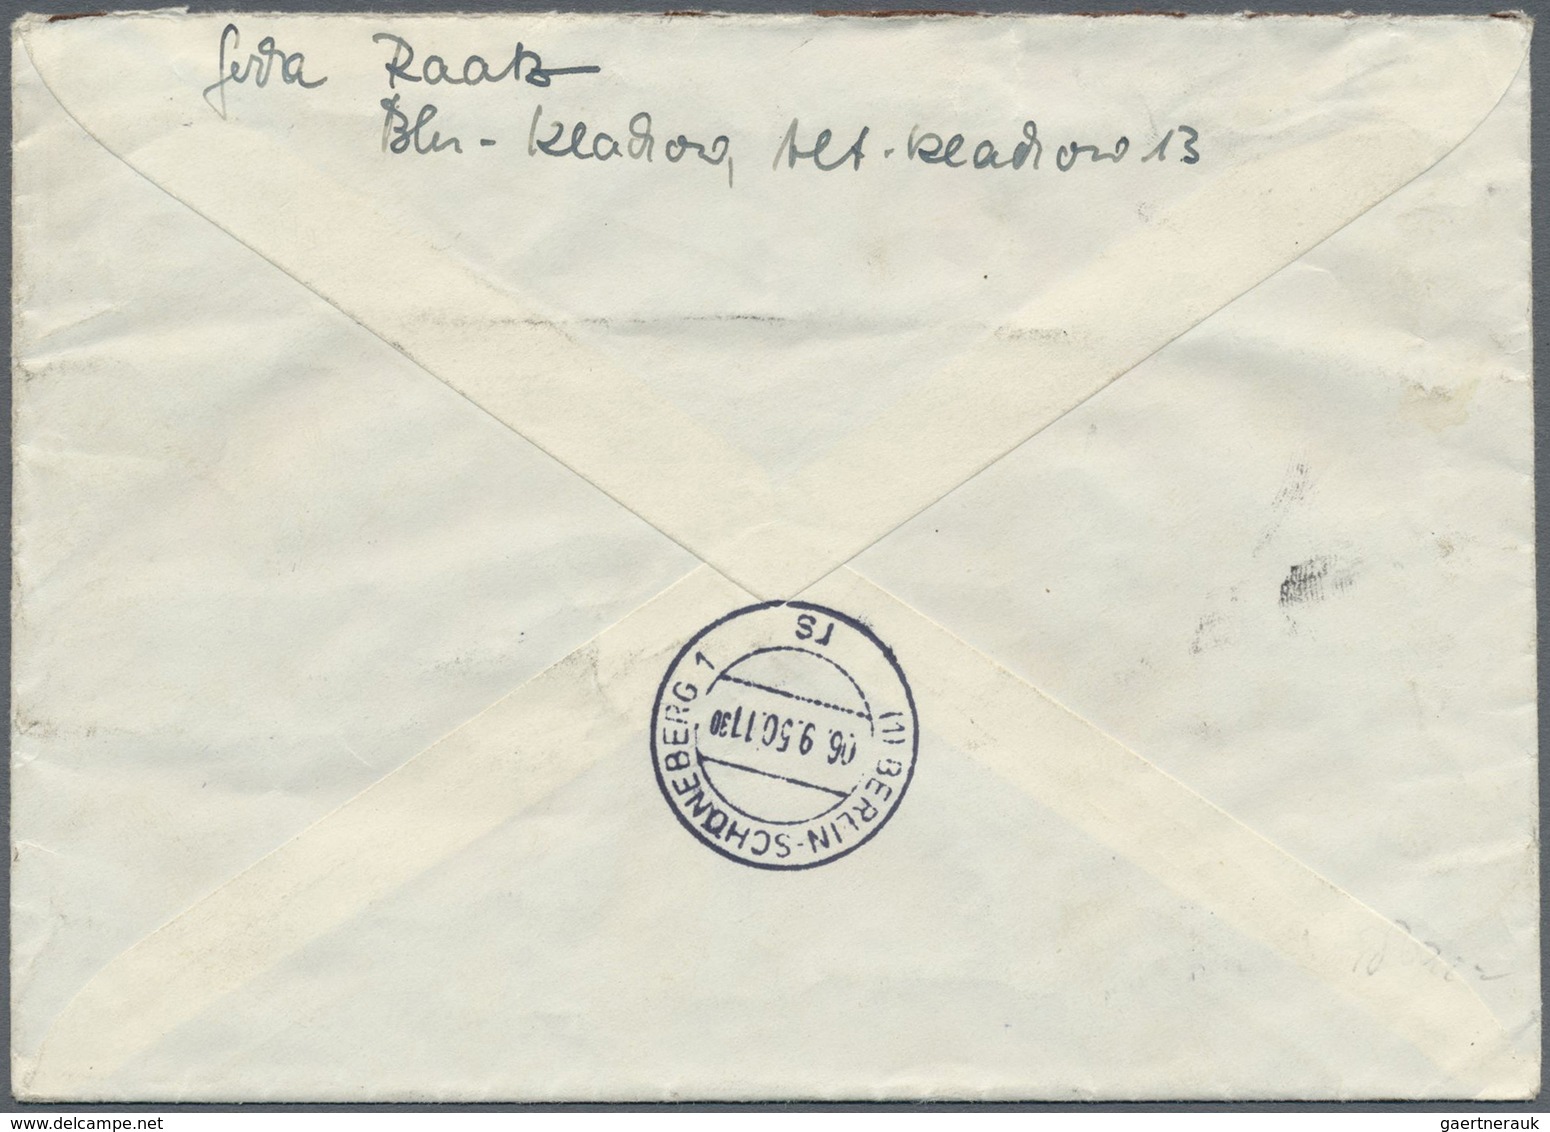 Br Berlin - Postschnelldienst: 1949, 40 Pfg. Bauten Im Waagerechten Paar (leichte Randklebung) Als Port - Storia Postale